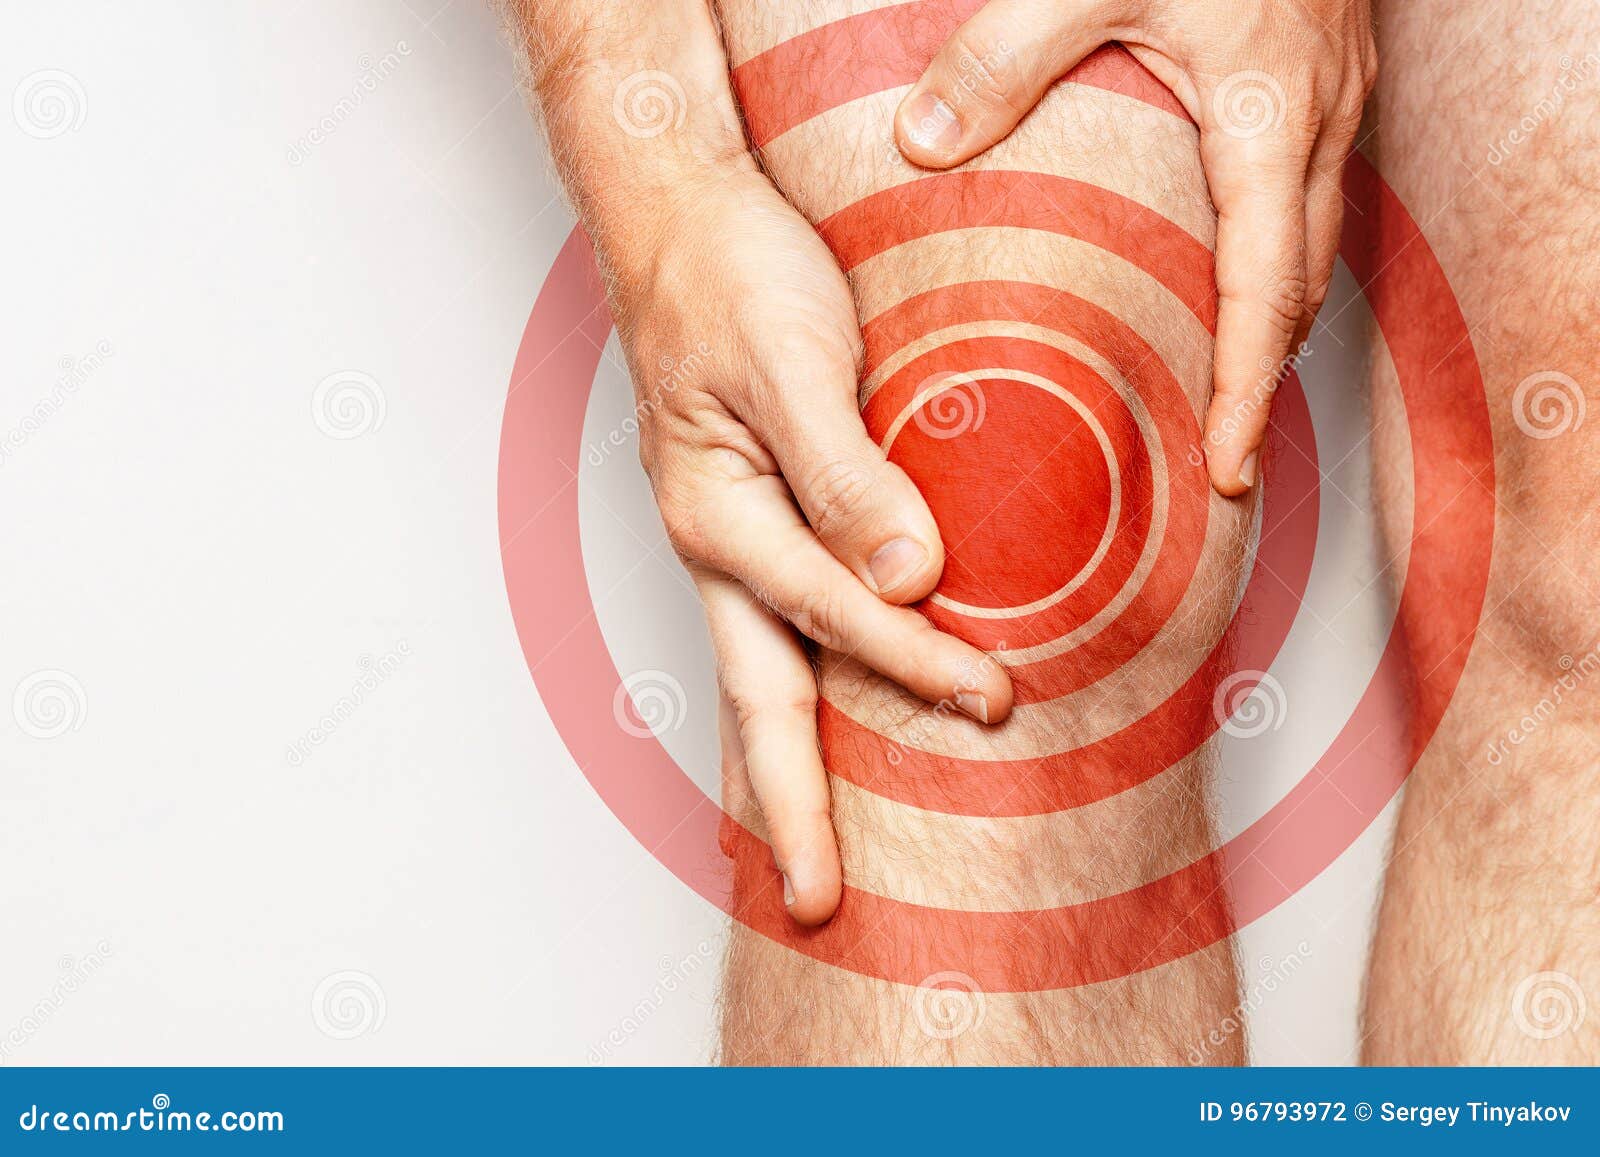 tretman stop artroza oticanje ruke uzrokuje i bol u zglobovima